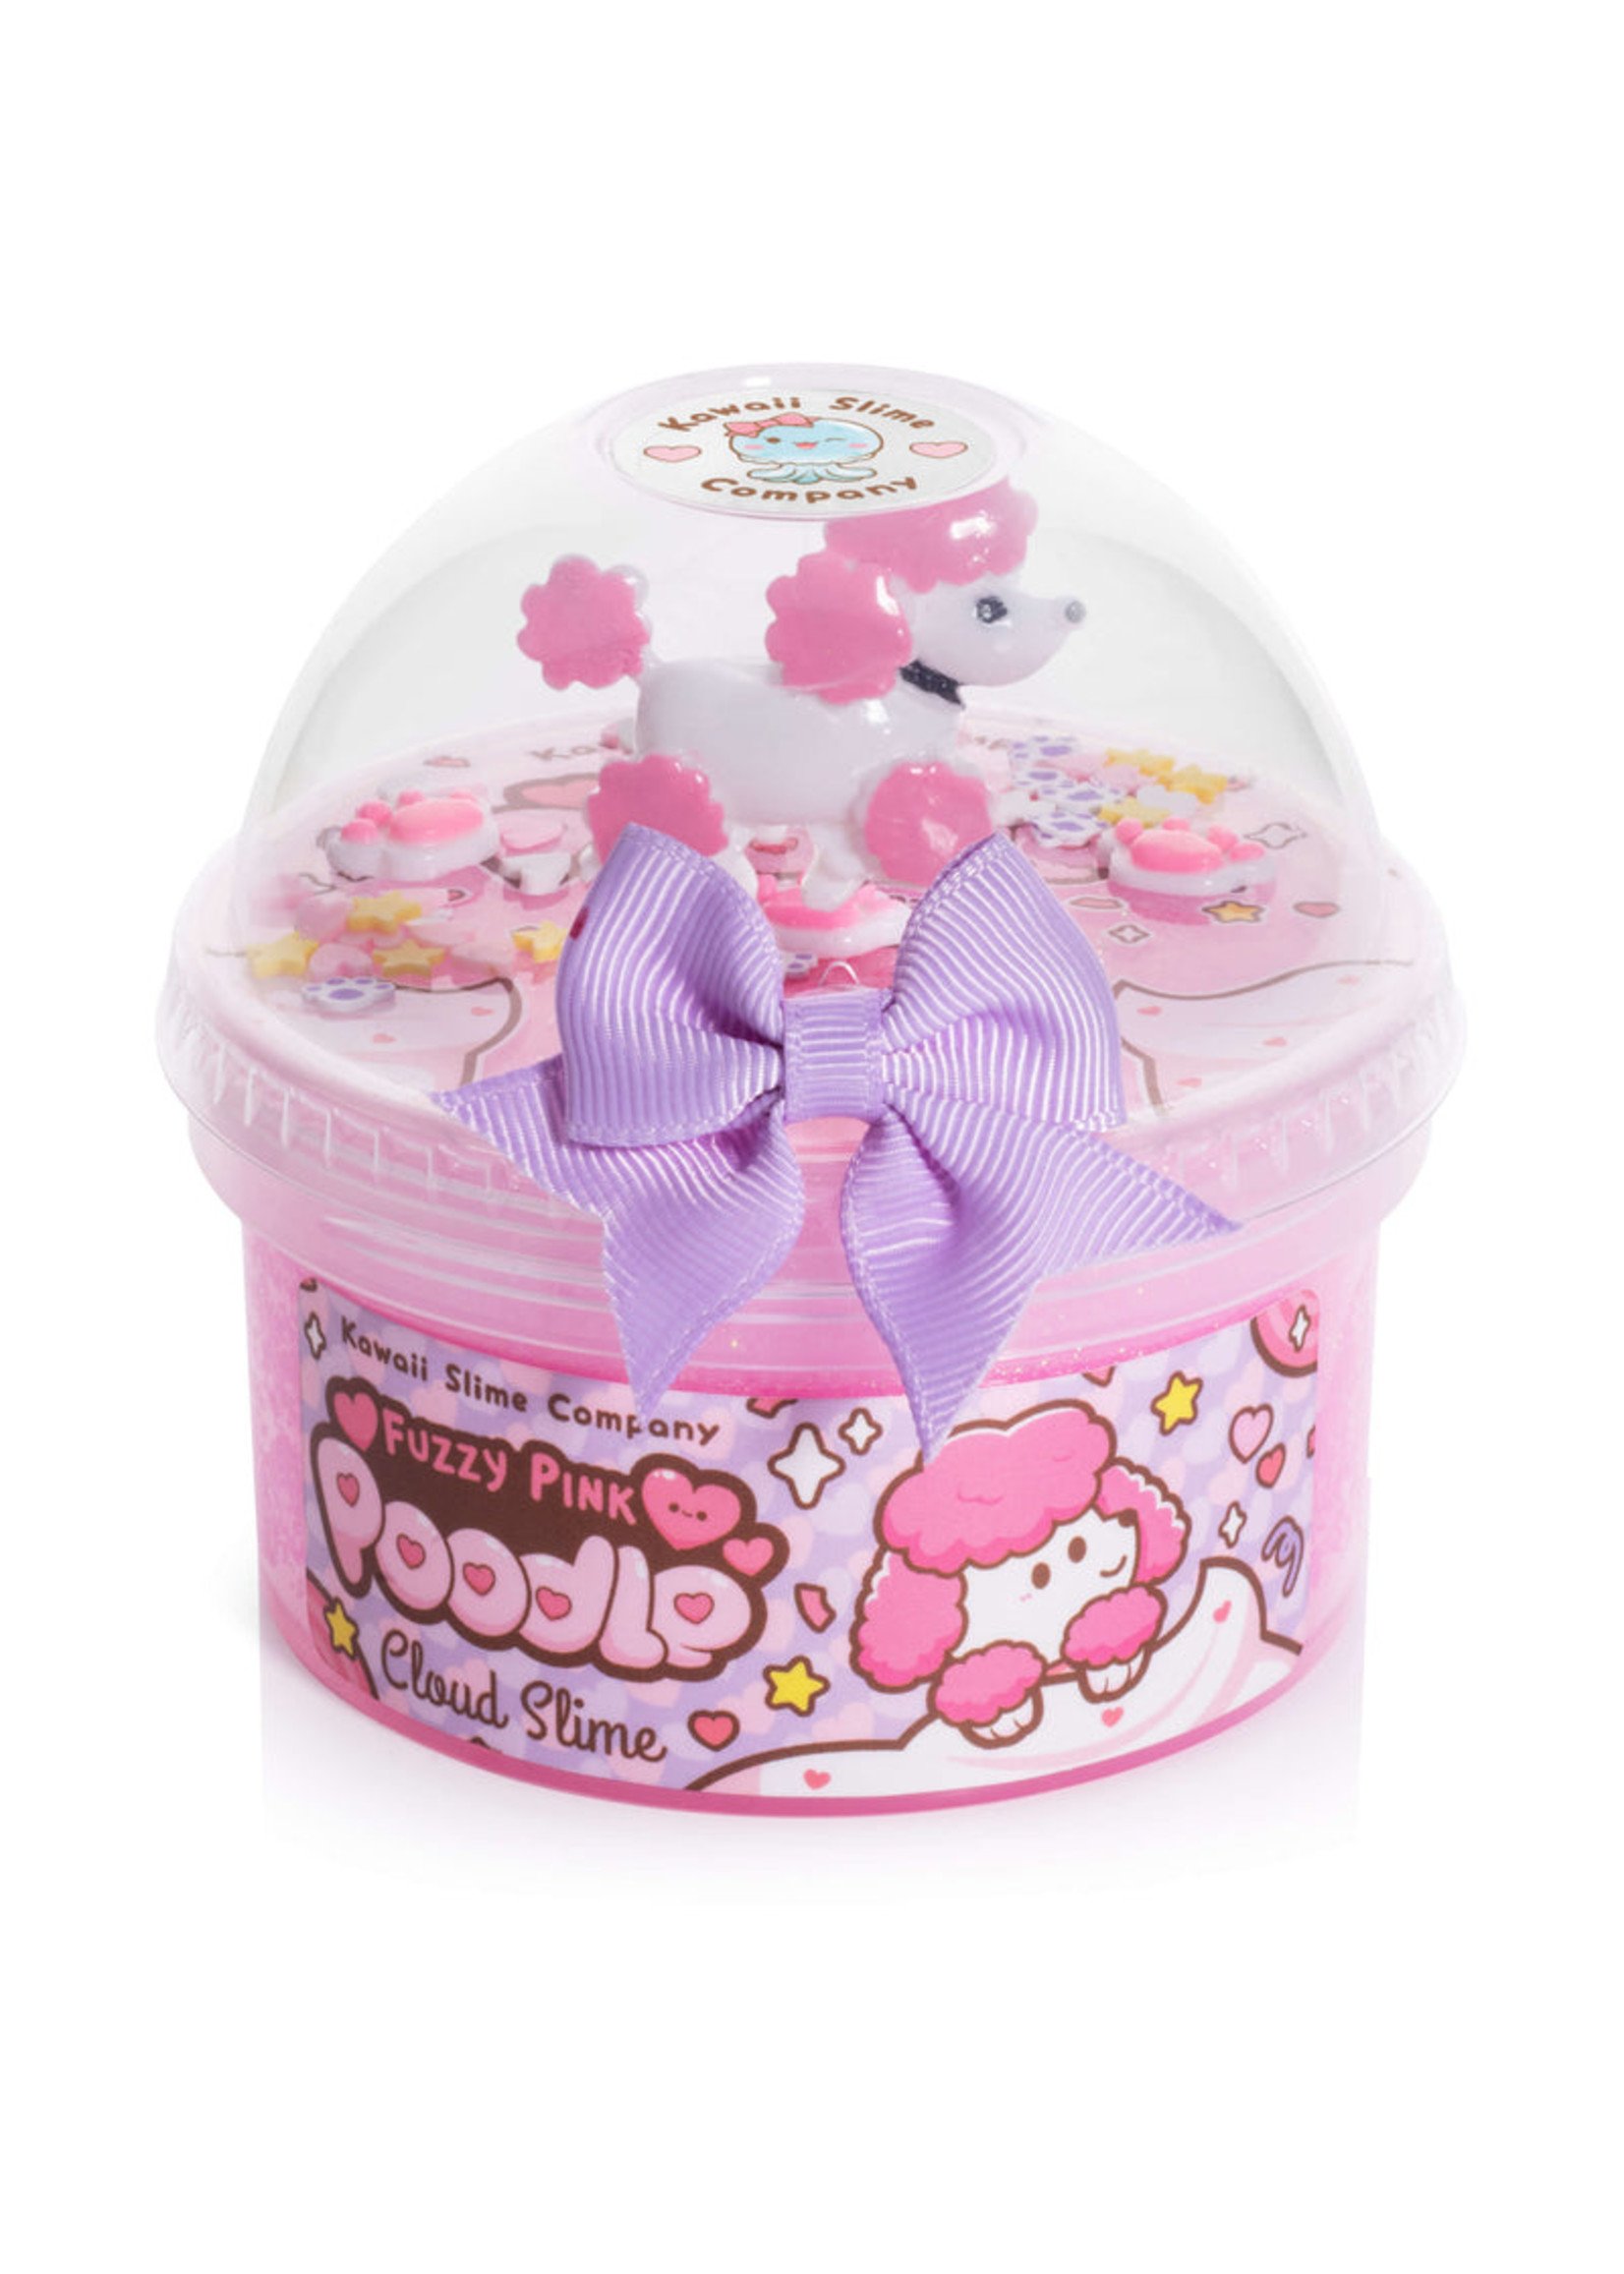 Kawaii Company "Fuzzy Pink Poodle" Cloud Slime